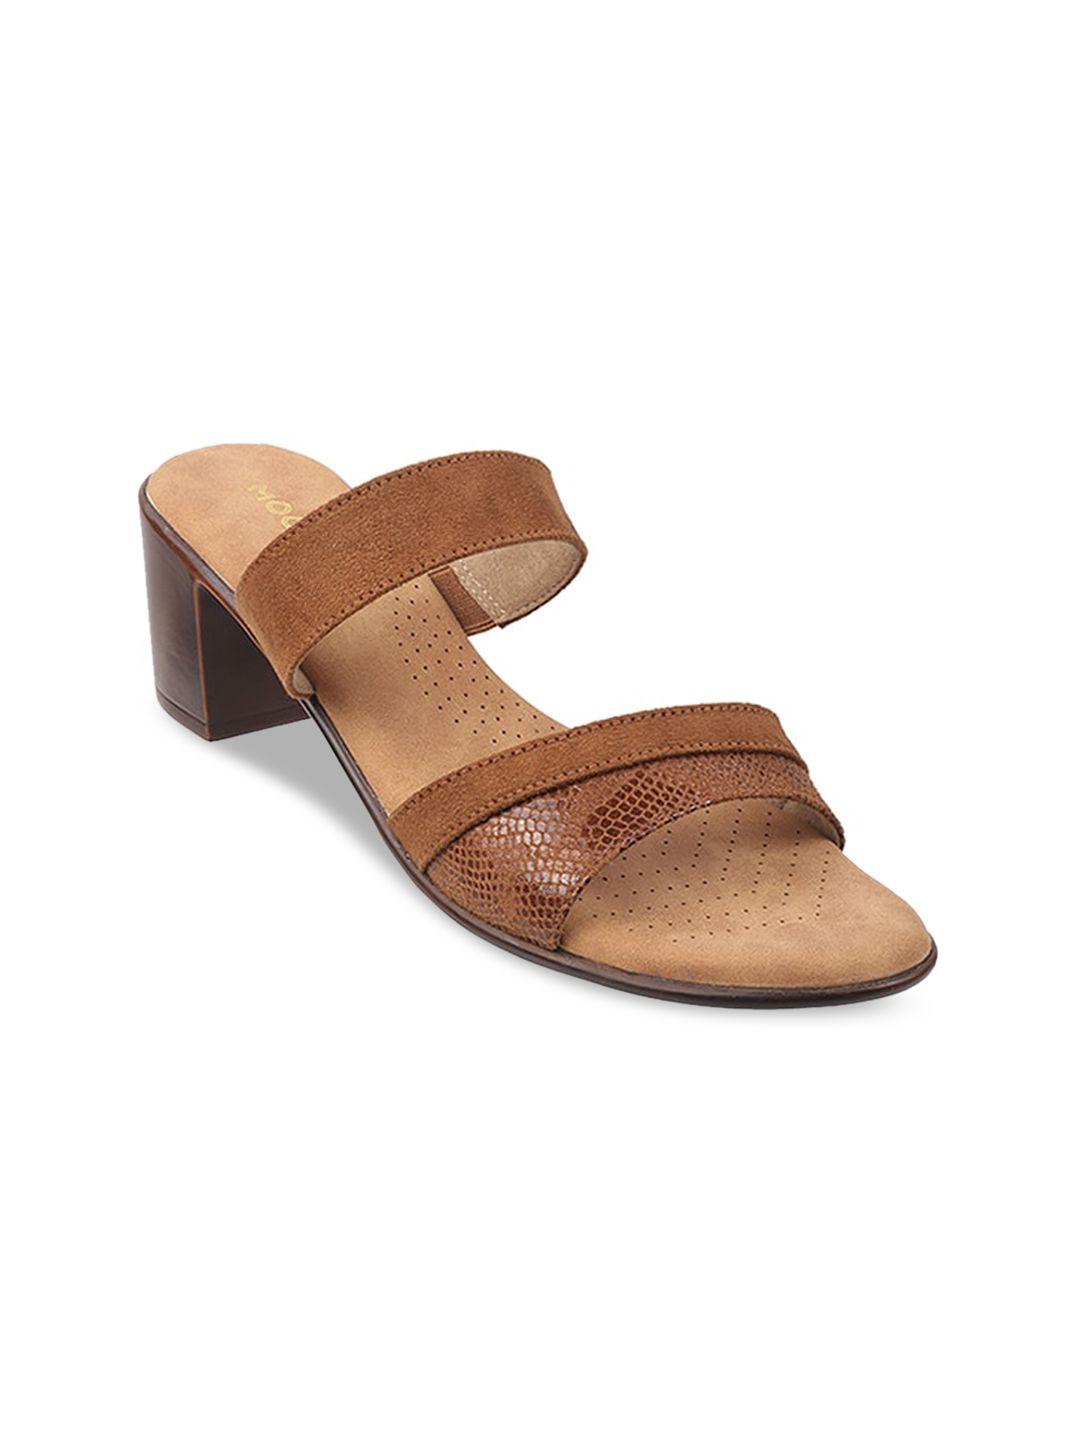 mochi-tan-textured-block-sandals